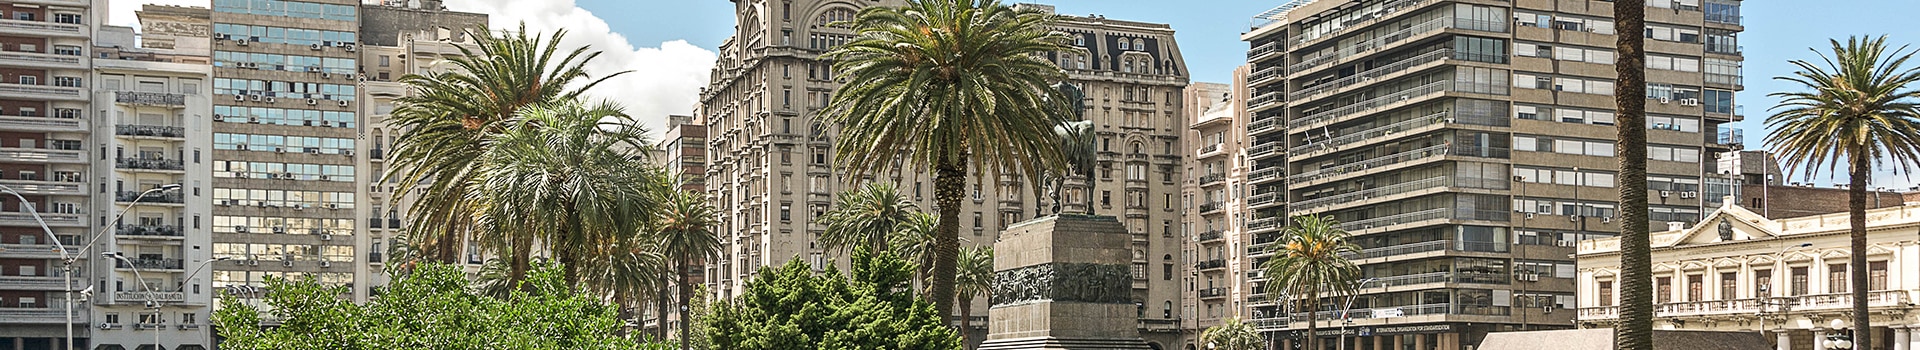 Gran Canaria - Montevideo